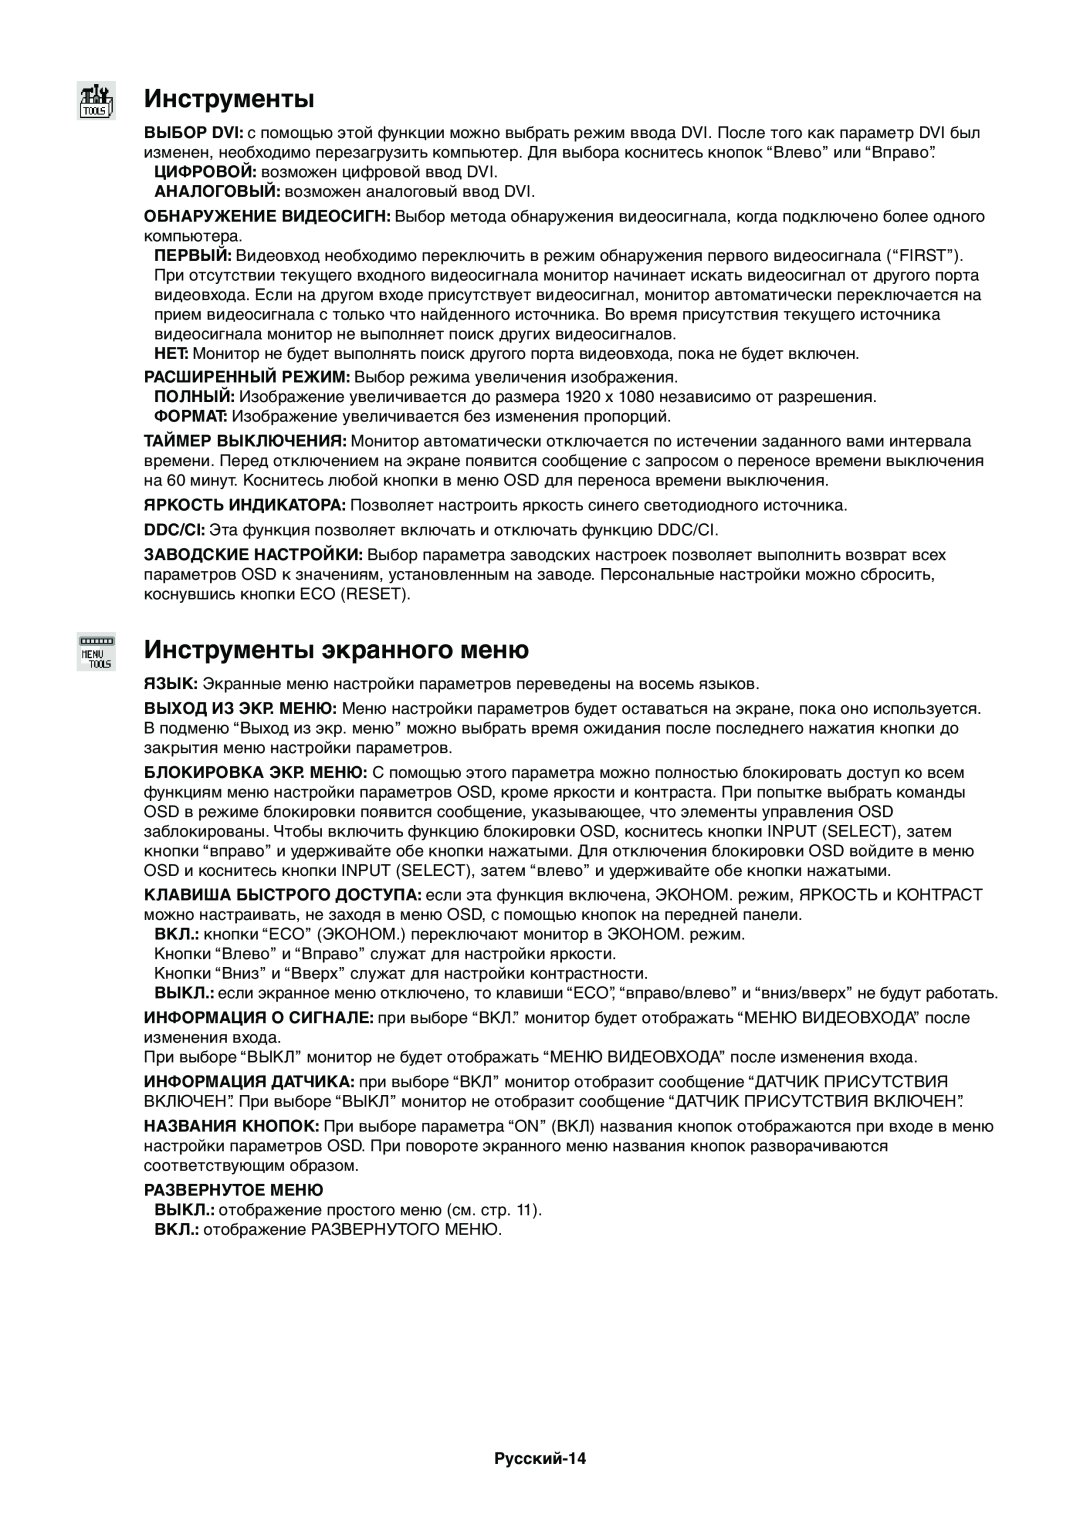 NEC EX231WP manual Инструменты экранного меню, Русский-14 